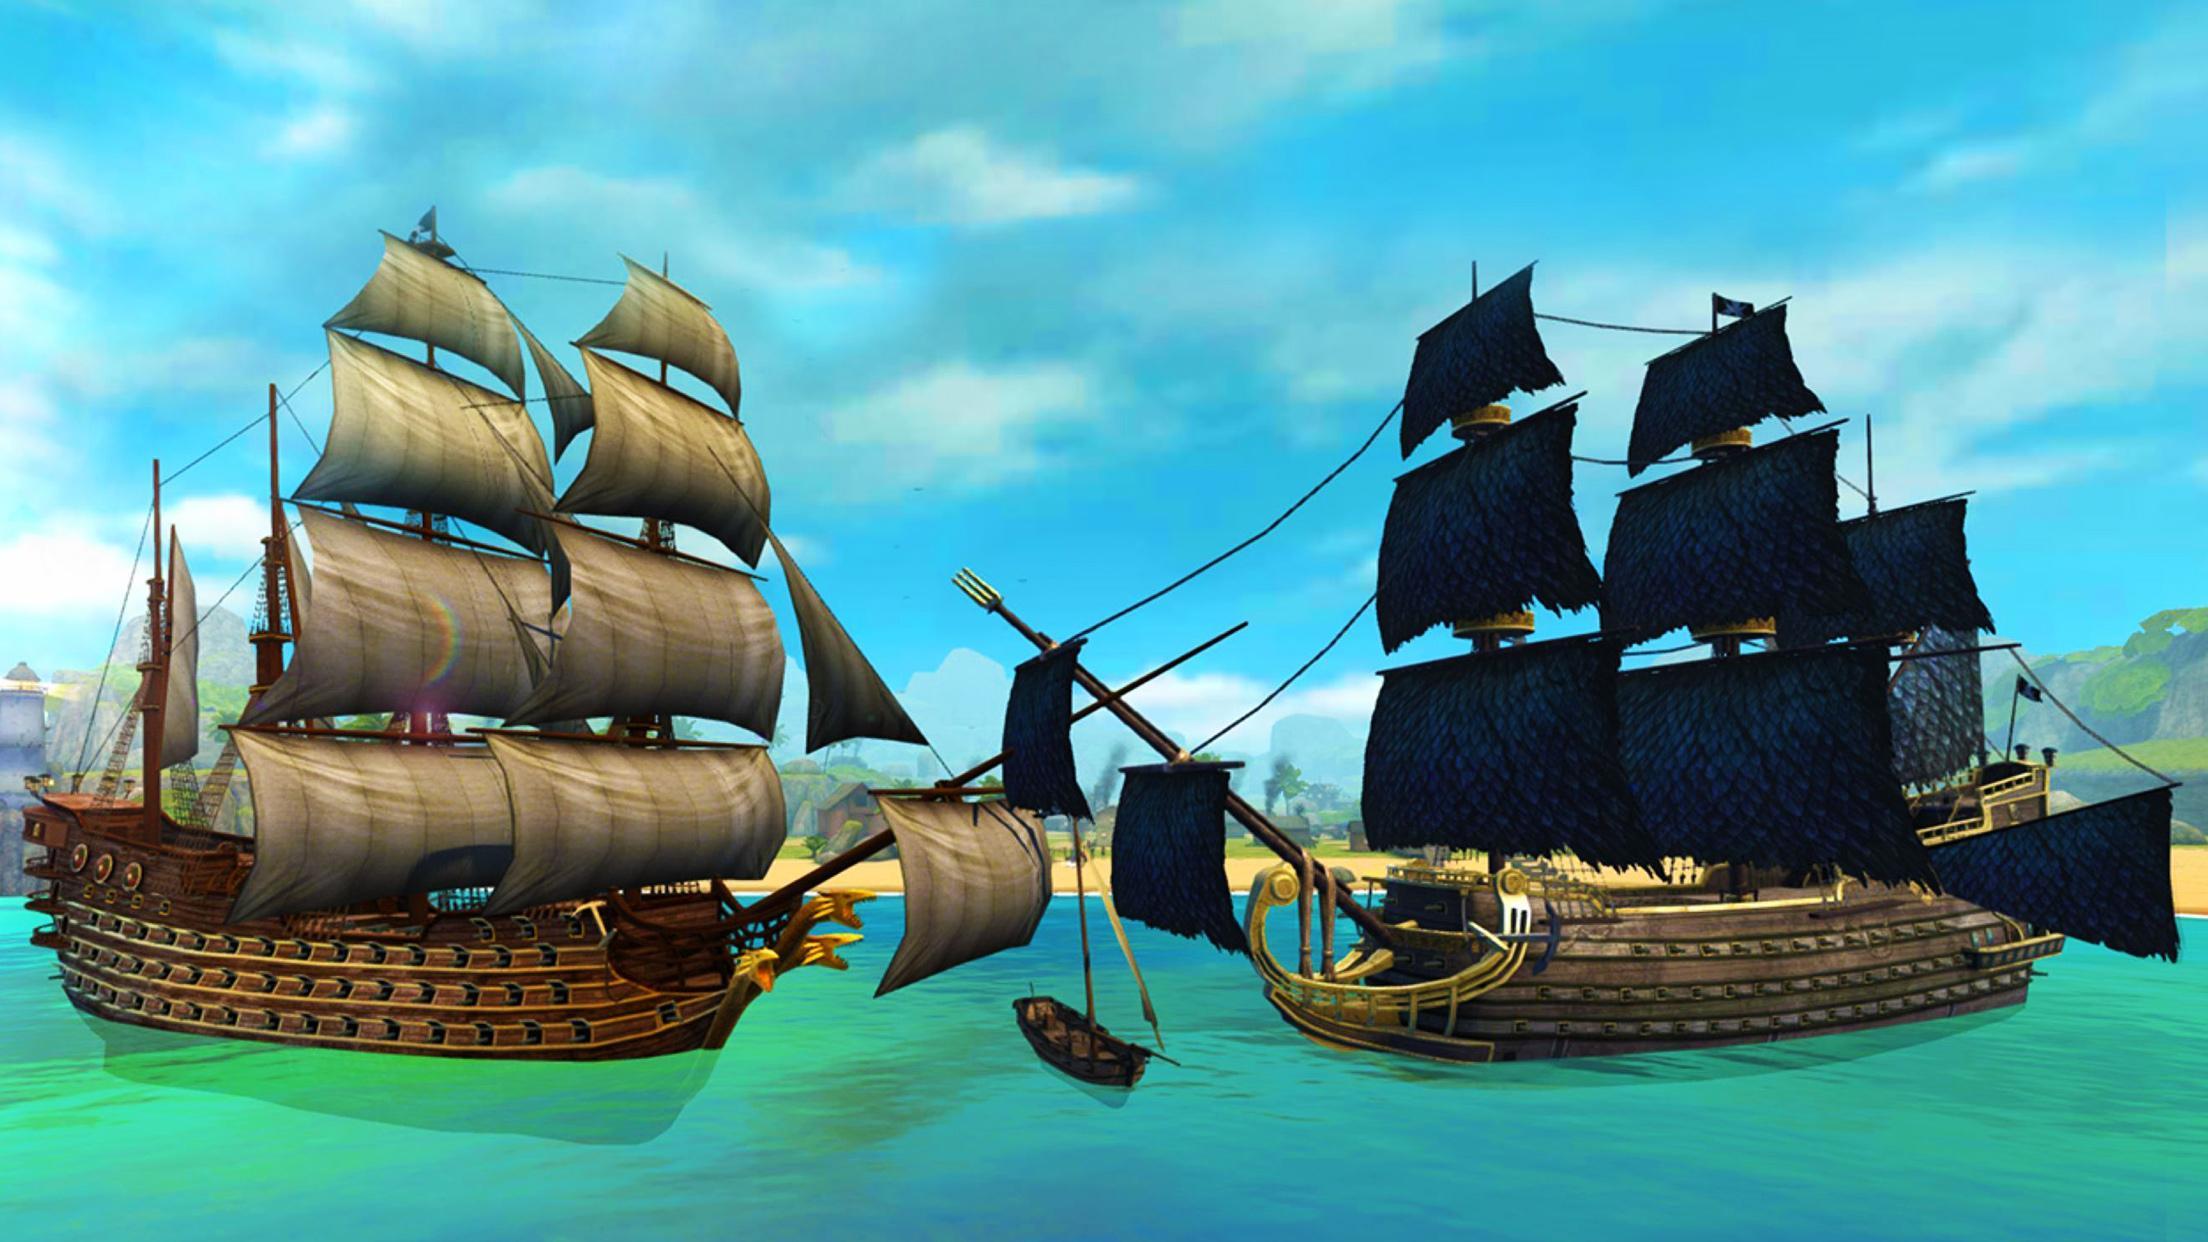 Сражения кораблей игра. Ships of Battle - age of Pirates - Warship Battle 2. Pirate ship Battles игра. Игра корабли битвы эпохи пиратов. Корабли битвы - эпоха пиратов - пират корабль.